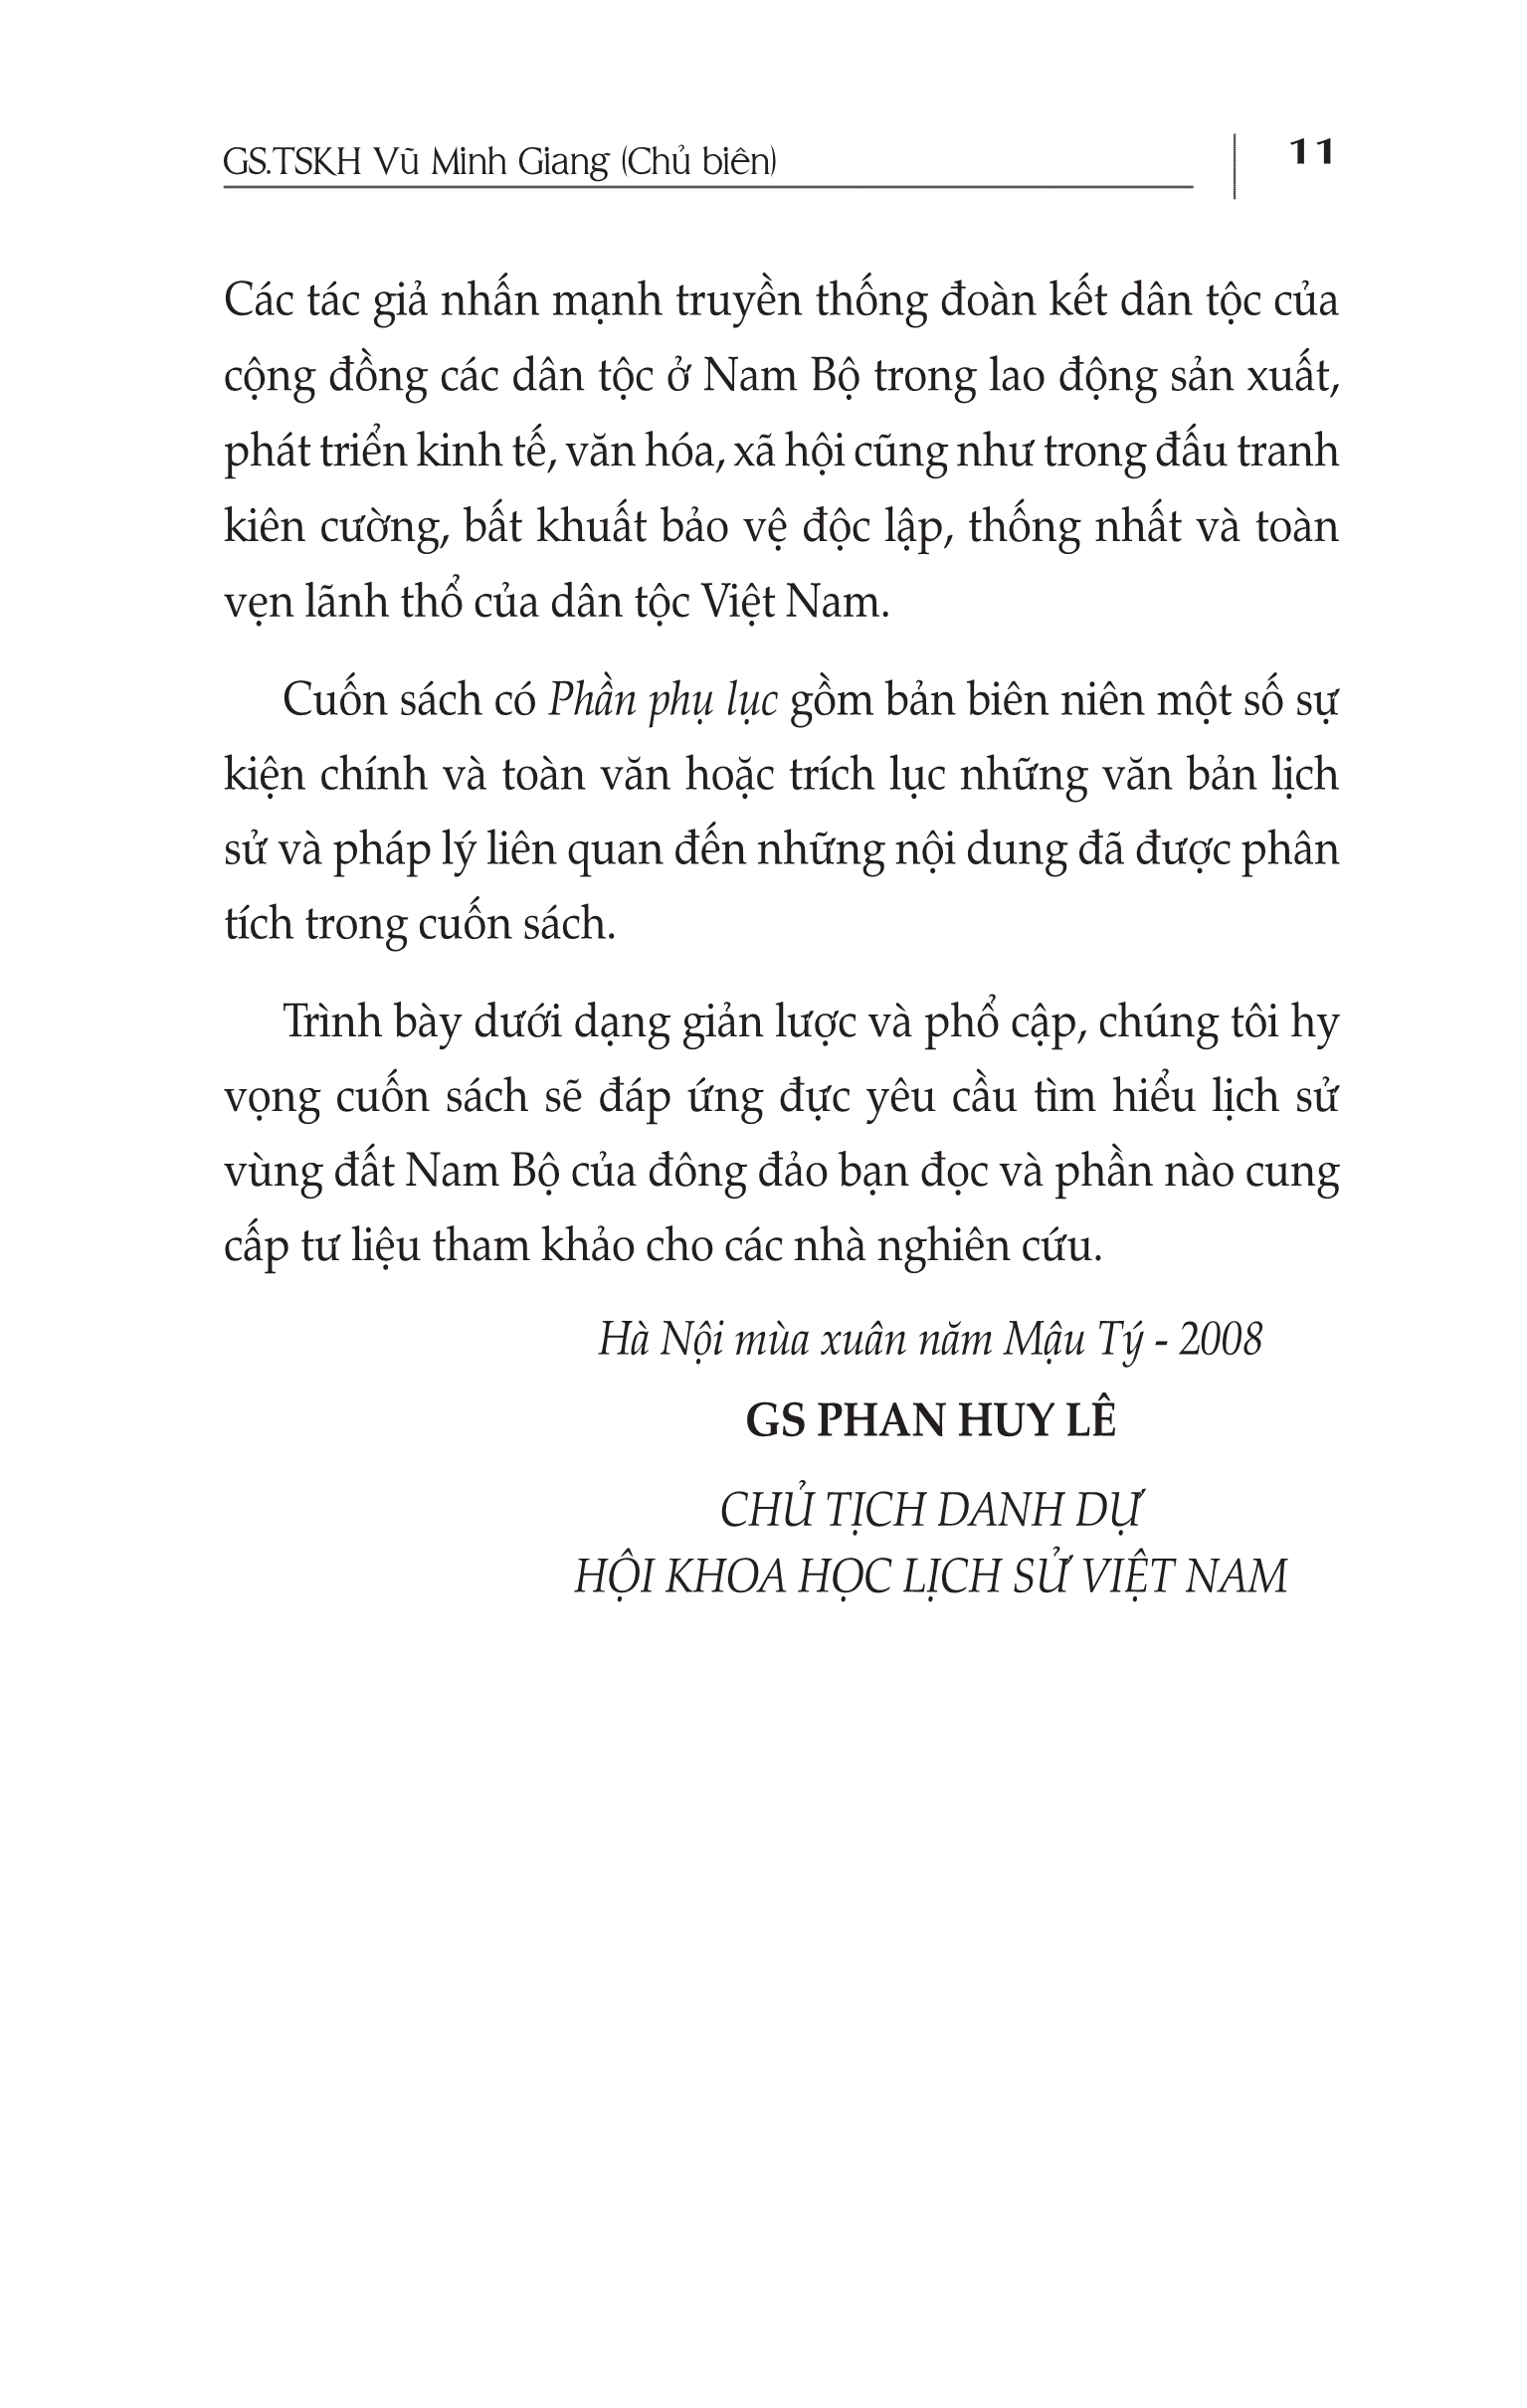 Lược Sử Vùng Đất Nam Bộ Việt Nam